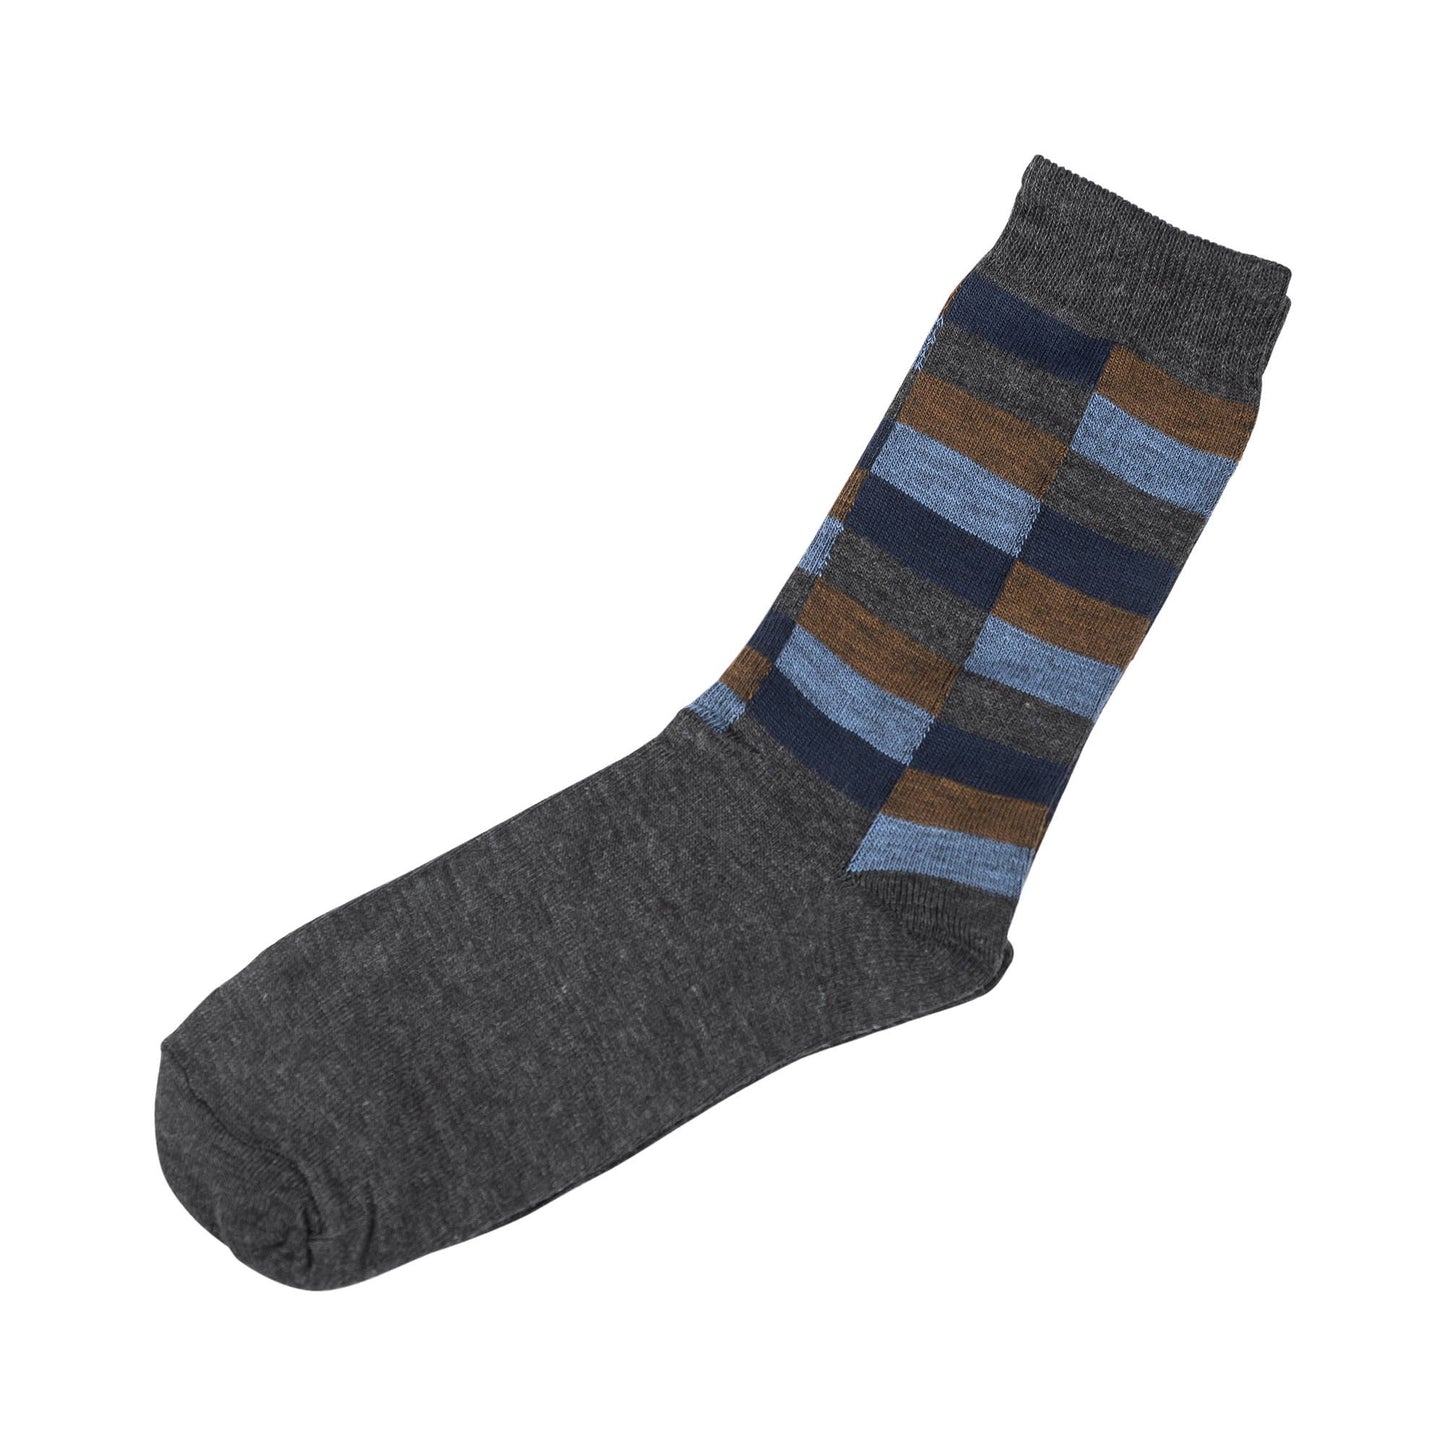 Men's Socks - 5 Boxed Pair